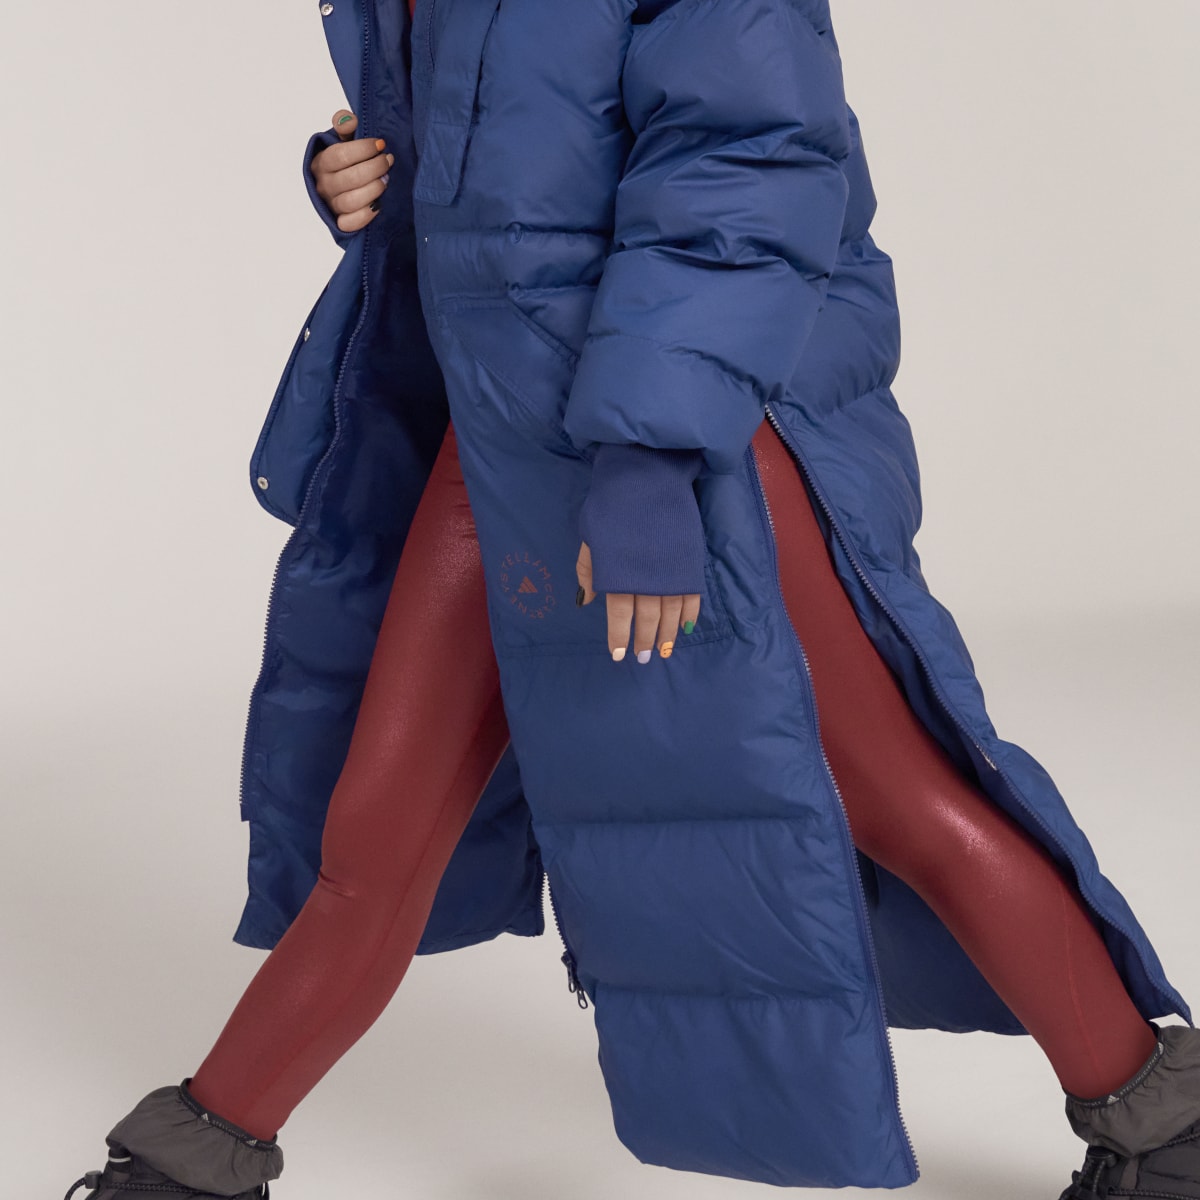 Adidas by Stella McCartney Long Padded Winter Jacket. 11